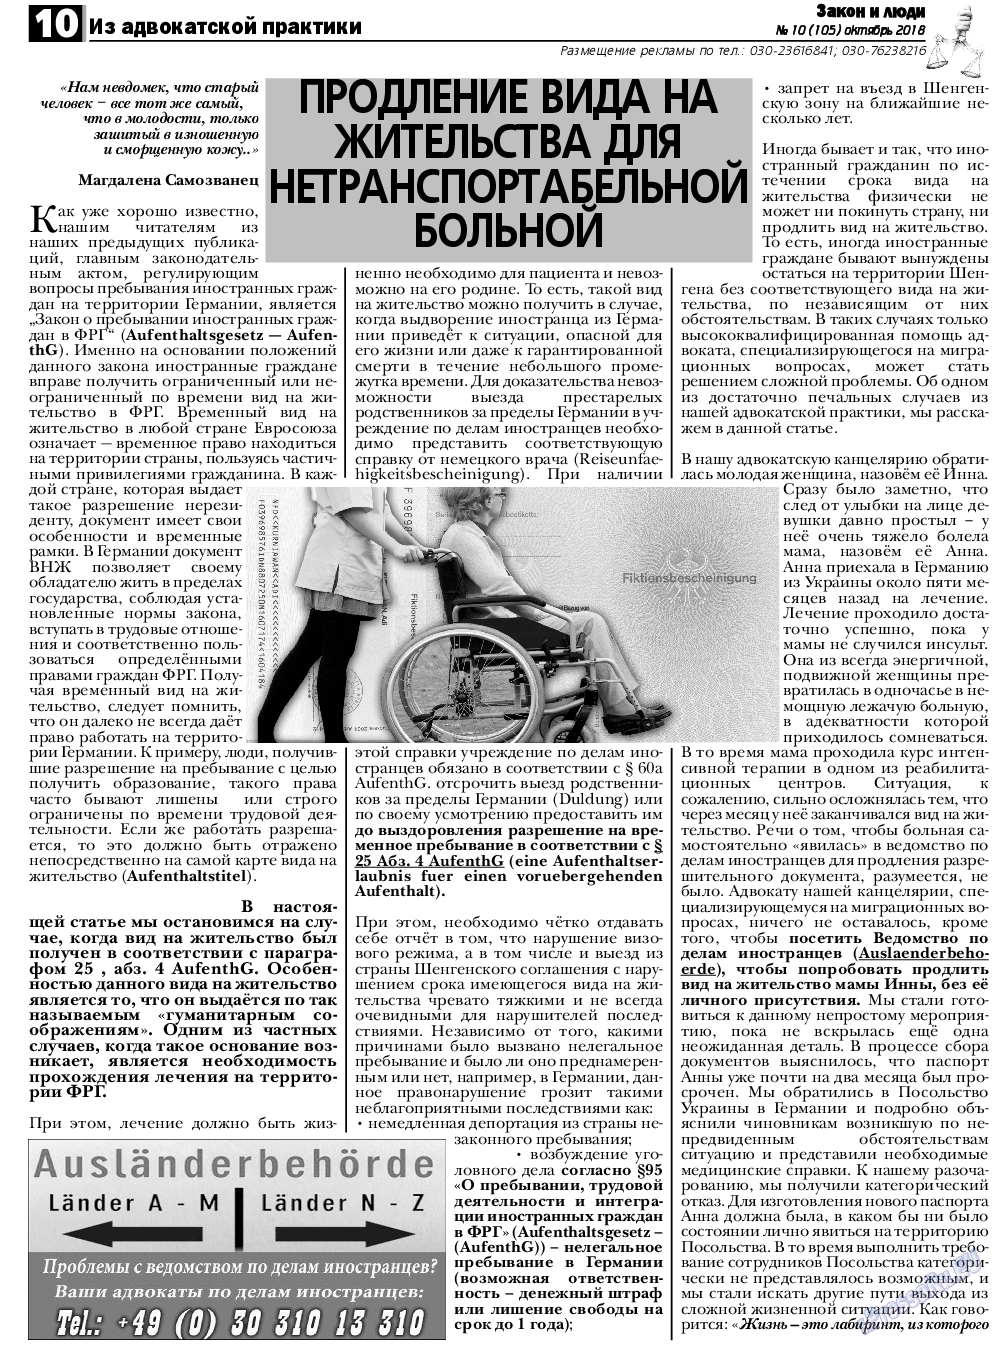 Закон и люди, газета. 2018 №10 стр.10